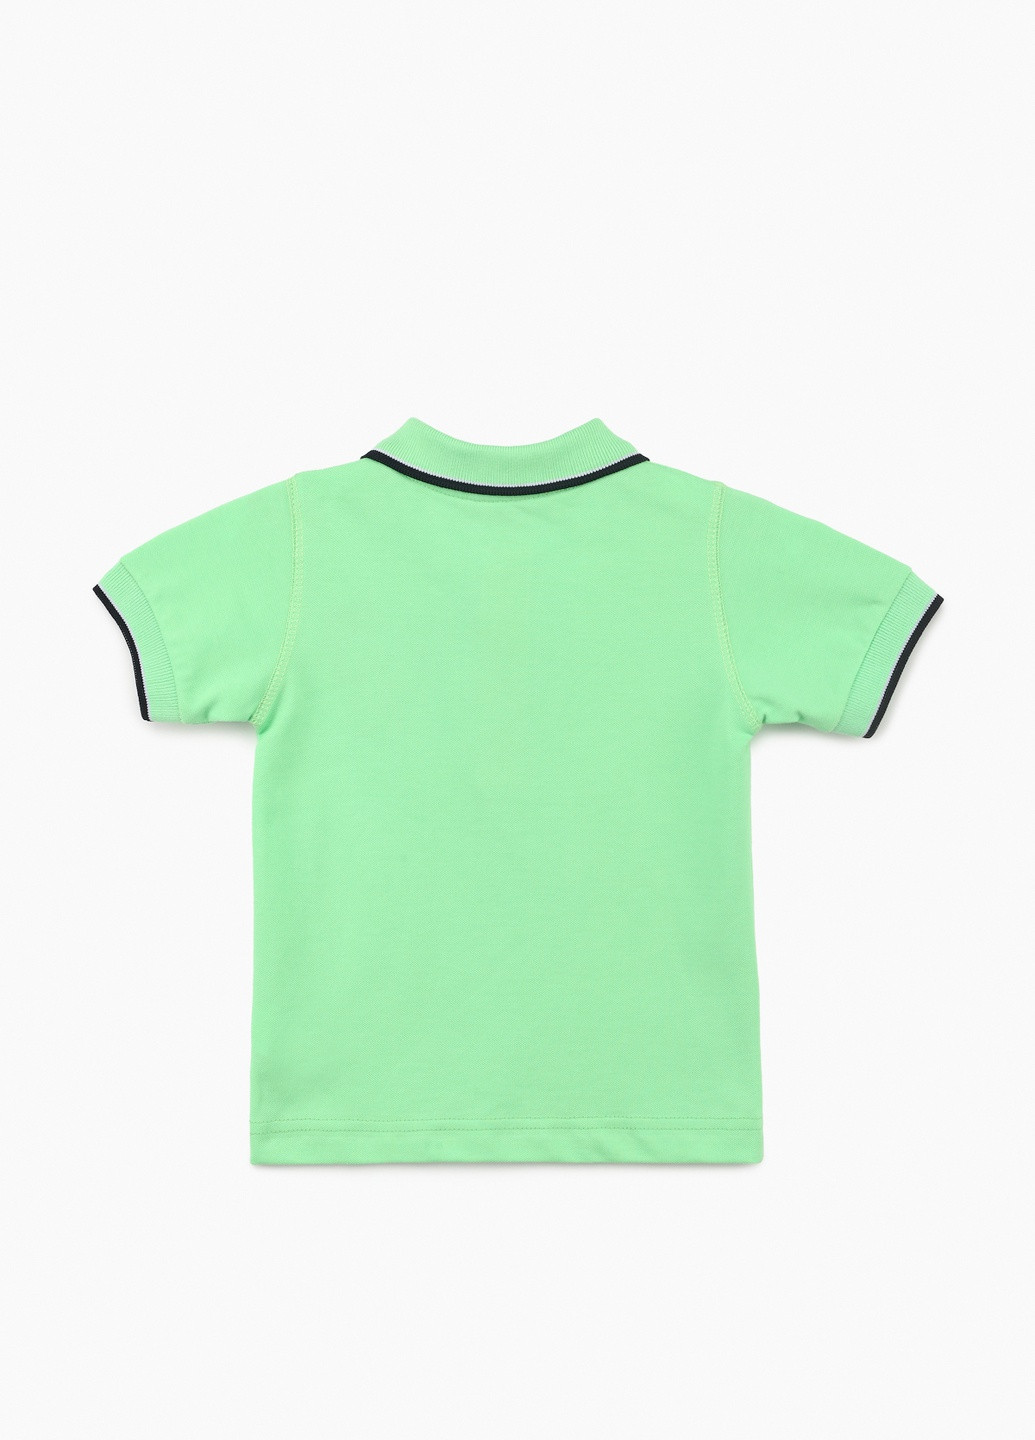 Салатовая детская футболка-поло для мальчика Popito однотонная